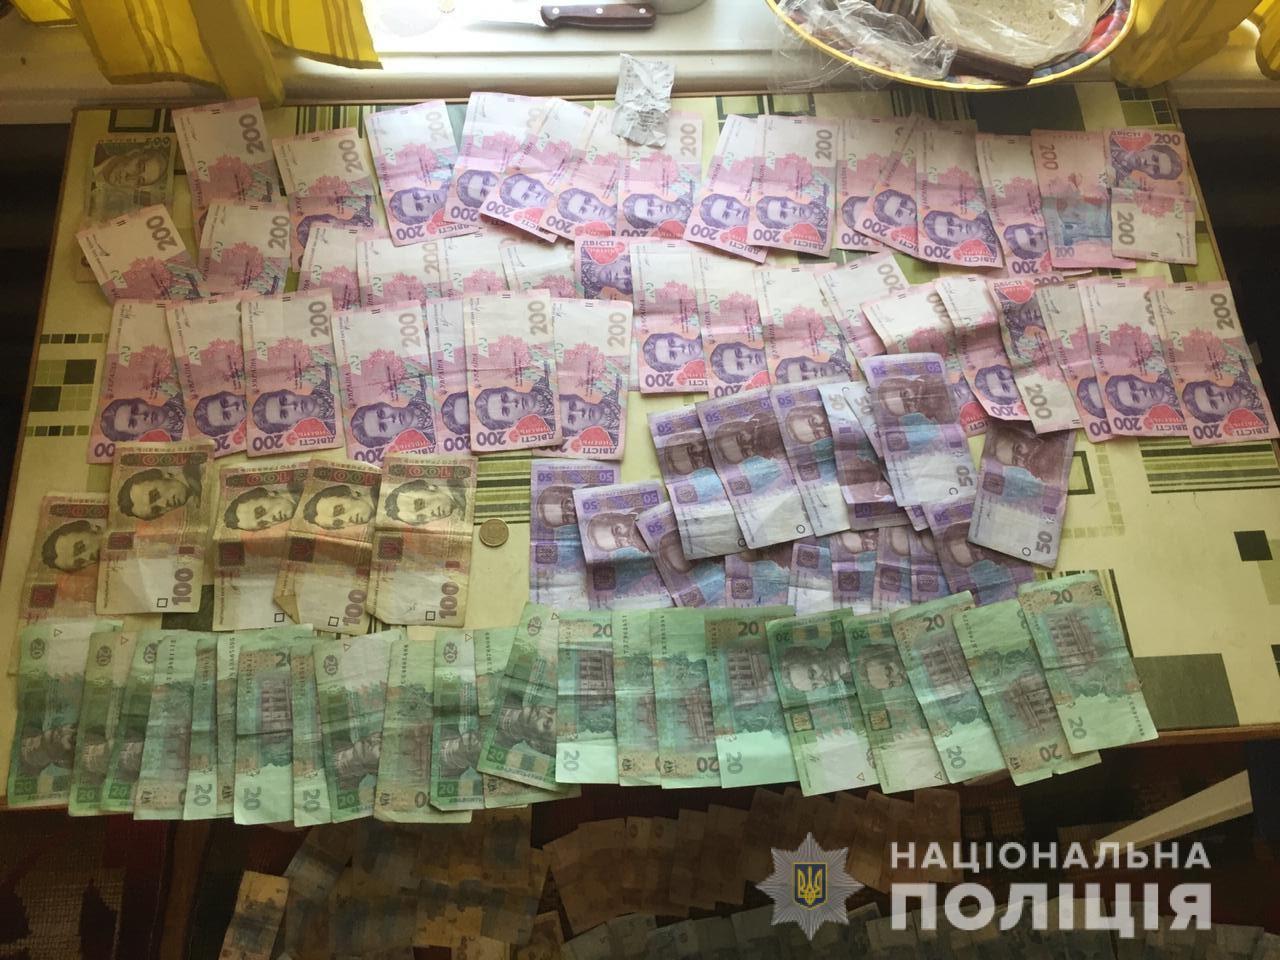 В Одесской области трое парней сломали топором терминалы и украли 15 тысяч гривен